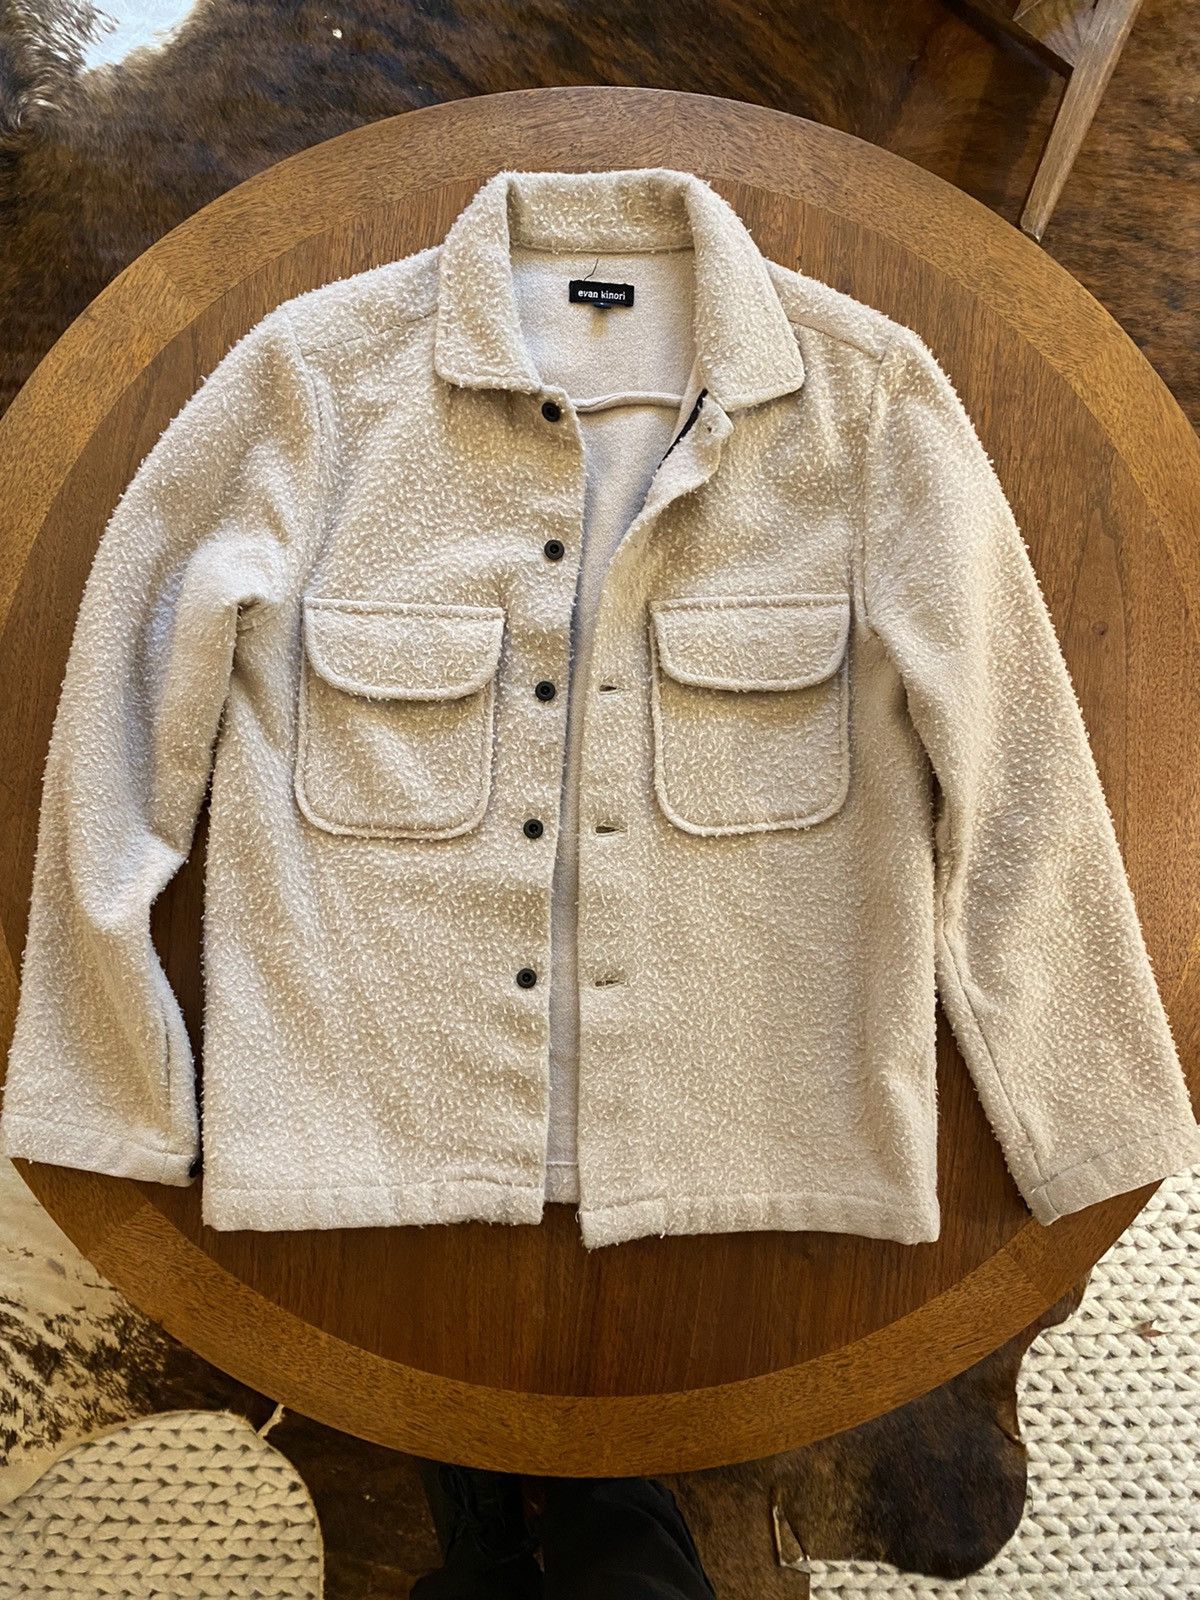 Evan Kinori Field Shirt - Casentino Wool | Grailed